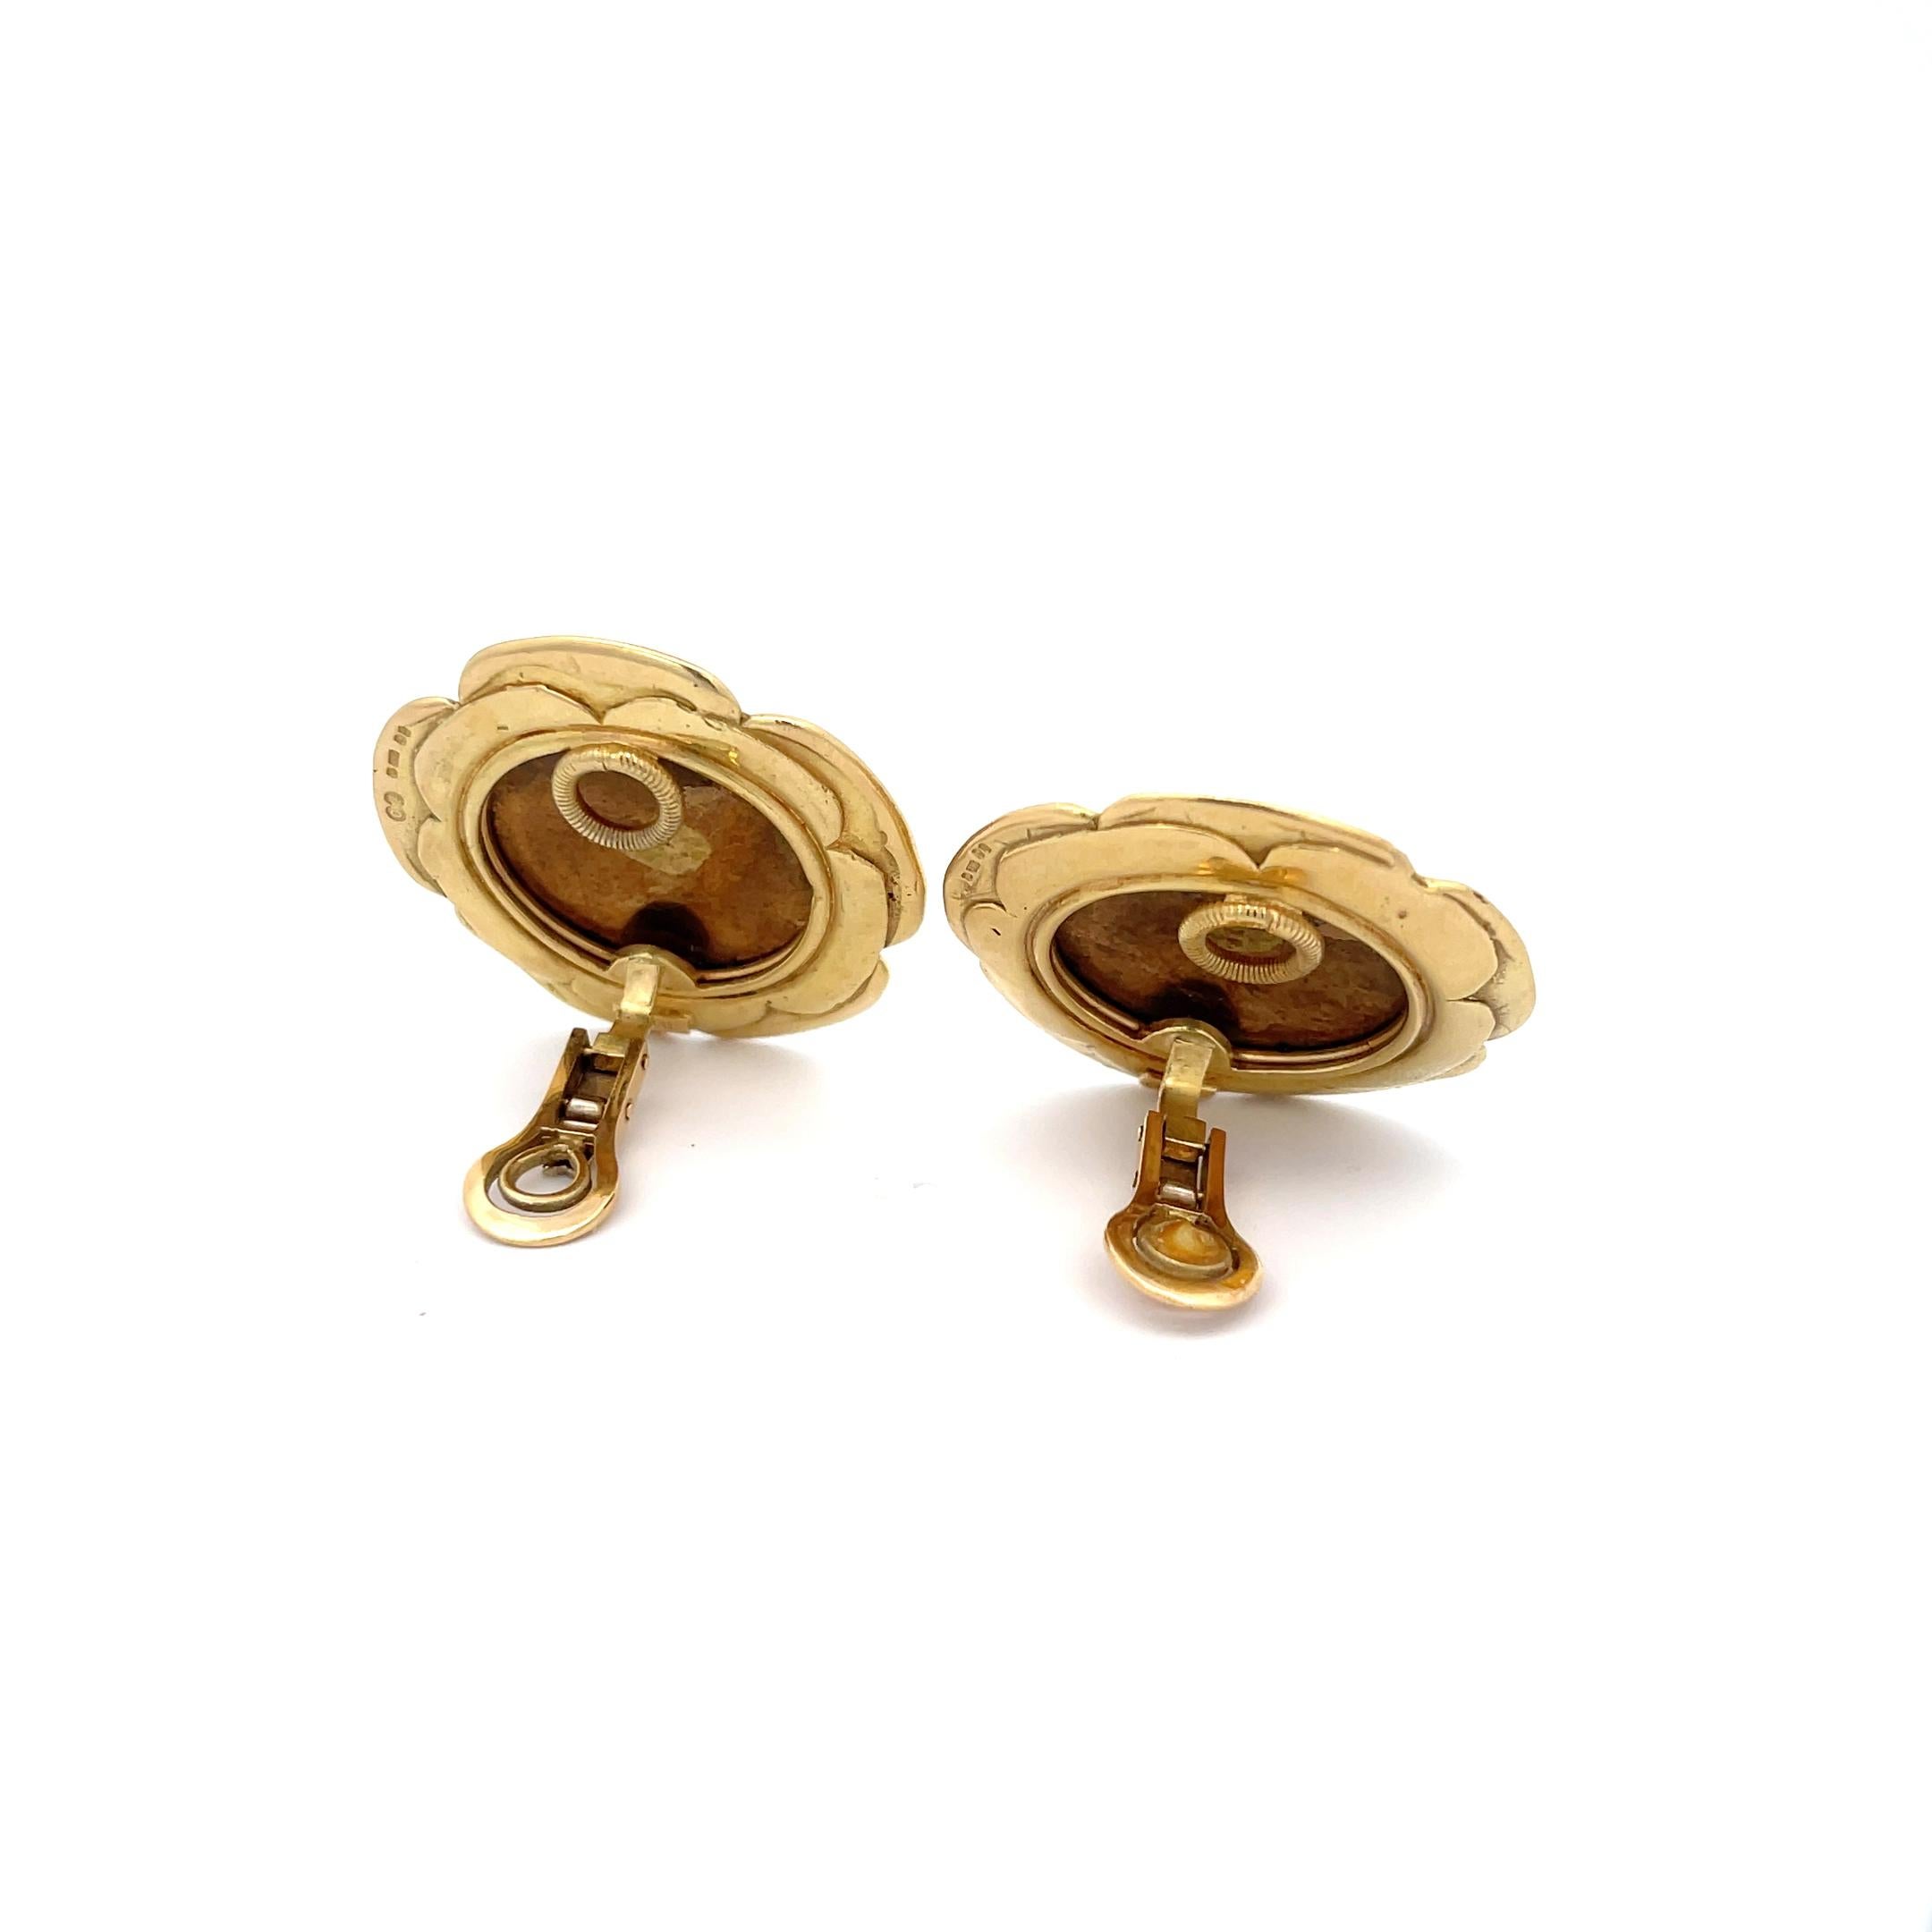 Elizabeth Gage Emaille-Ohrringe mit Clipverschluss aus 18 Karat Gelbgold. Die Ohrringe sind mit einem Blumenmotiv aus Emaille verziert. 
Durchmesser 1 3/8